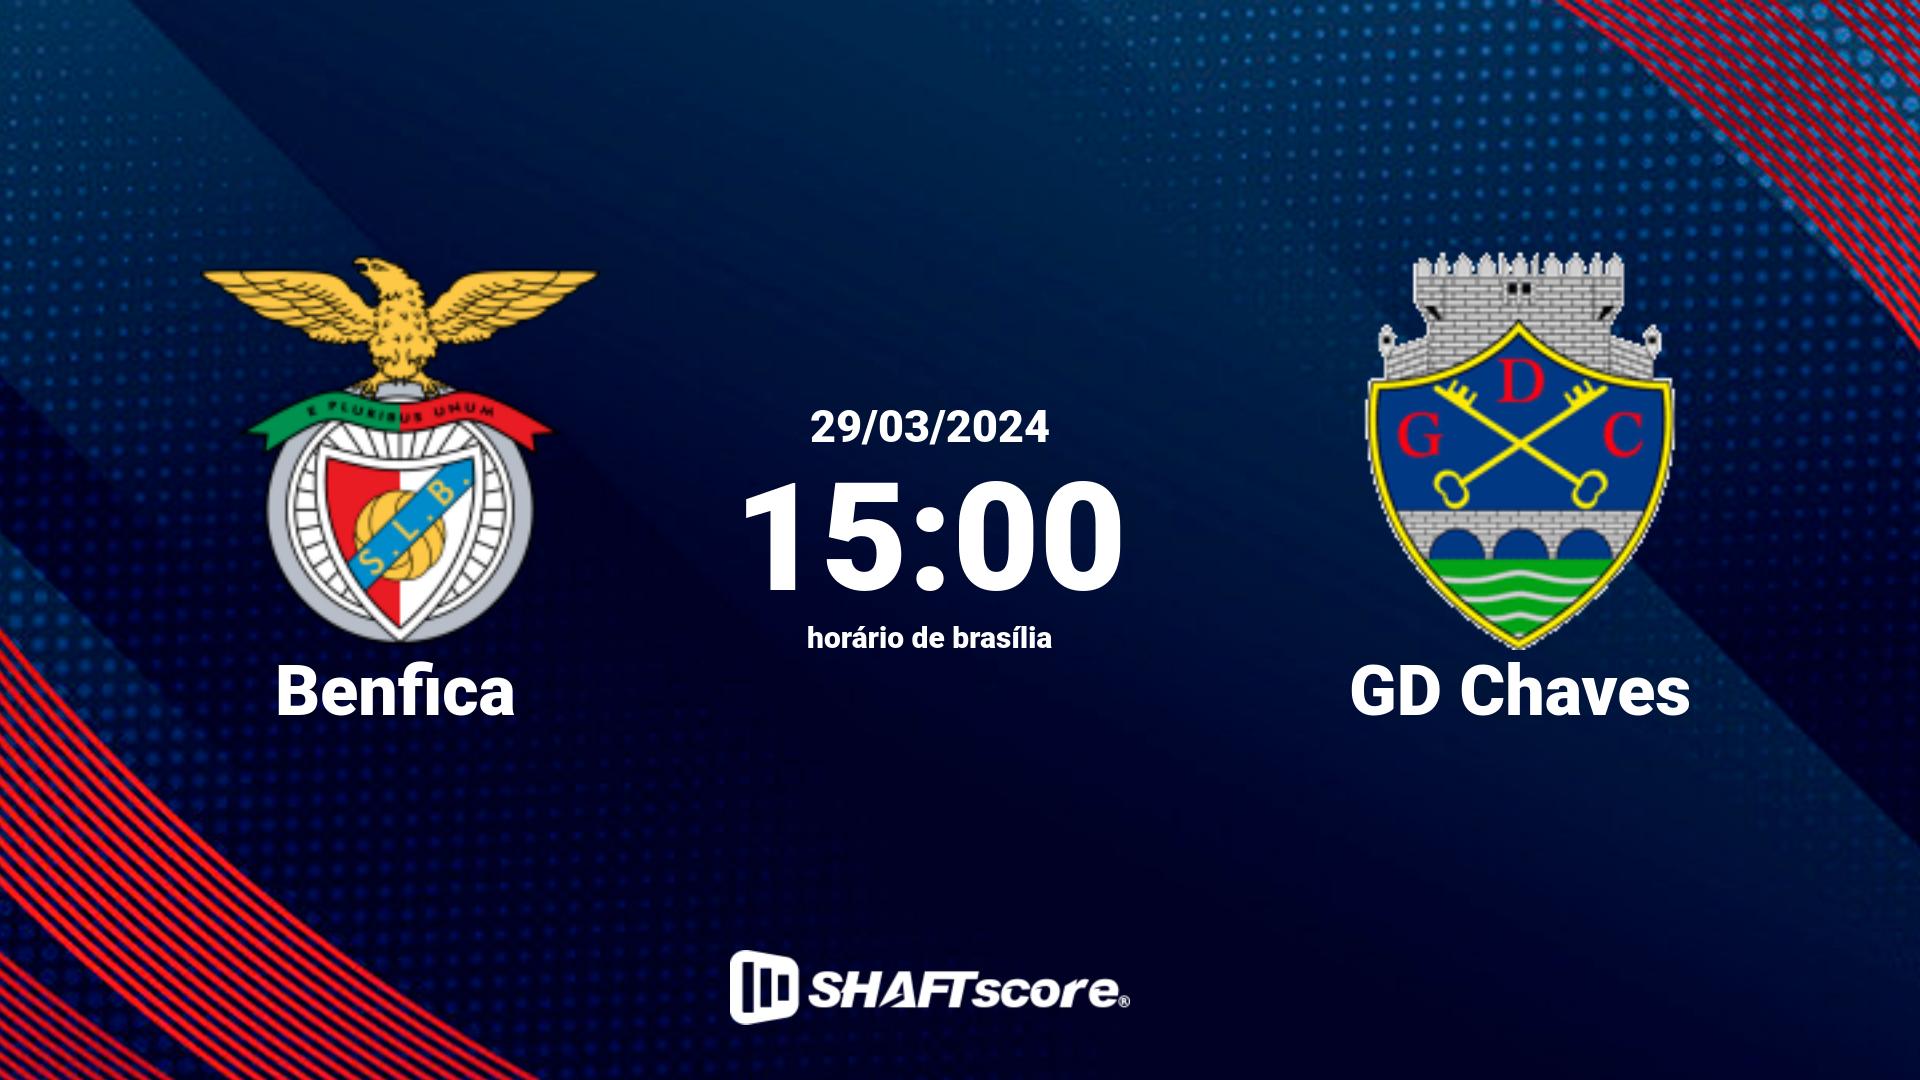 Estatísticas do jogo Benfica vs GD Chaves 29.03 15:00